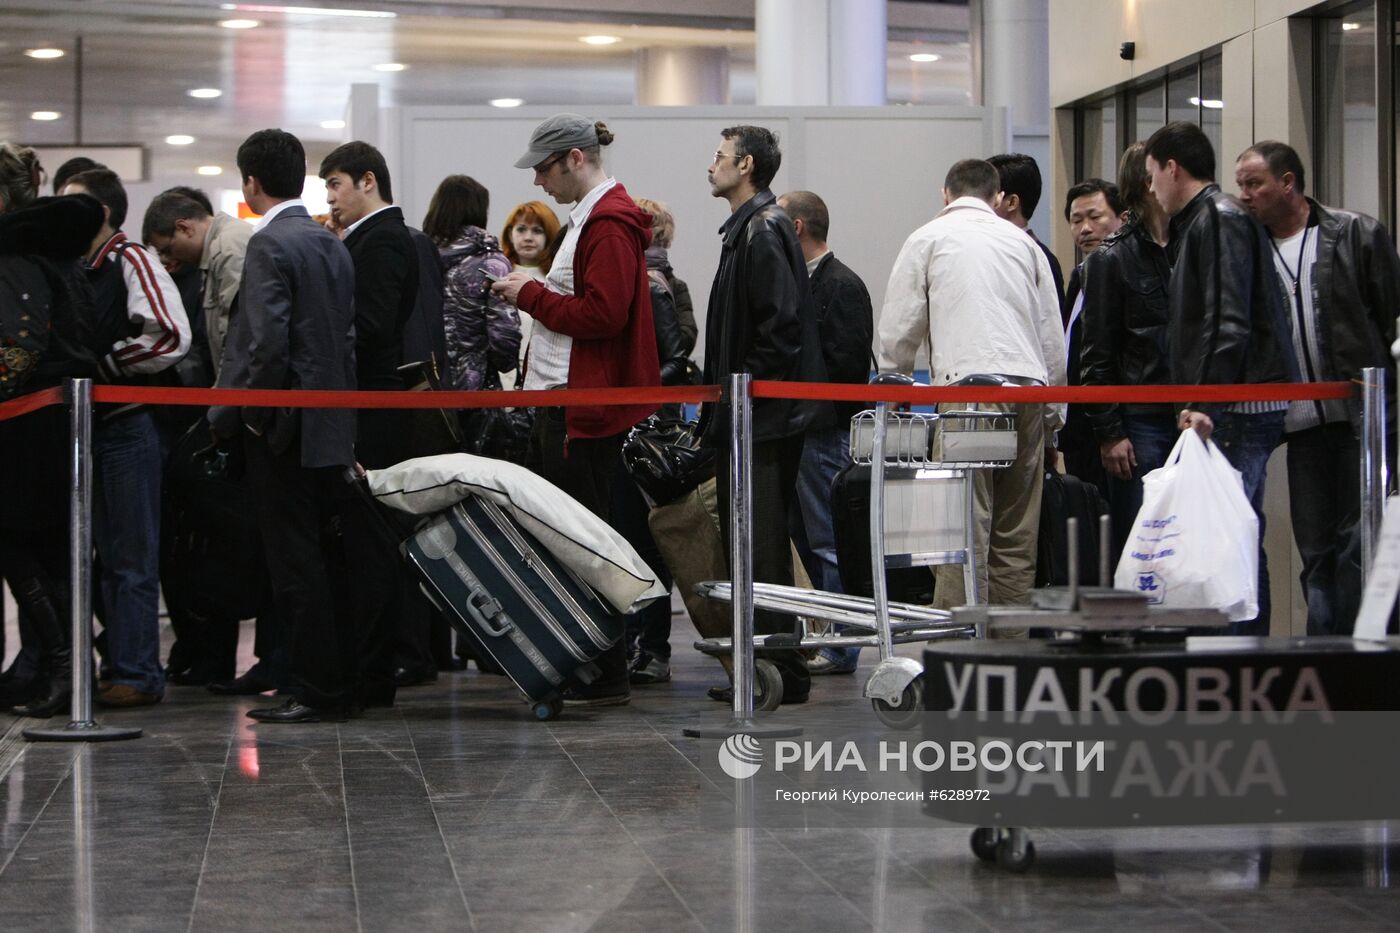 Пассажиры отмененных рейсов в аэропорту "Шереметьево"